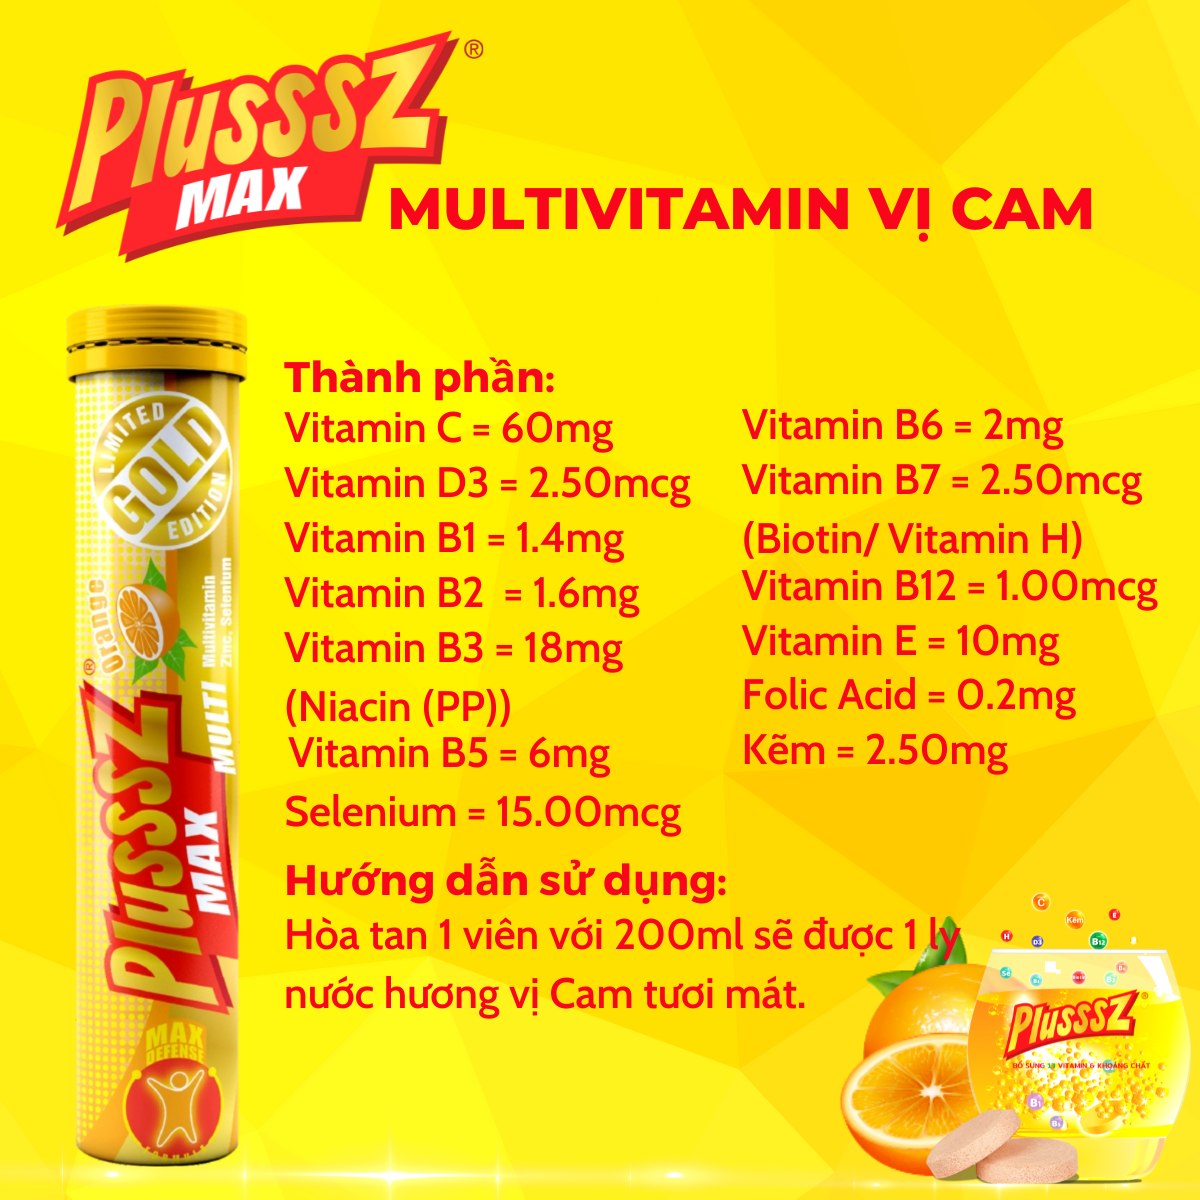 {COMBO5TUYP} Viên sủi Plusssz Max Multivitamin hương vị Cam không đường bổ sung vitamin C và khoáng chất dạng hòa tan, dễ hấp thu hỗ trợ tăng cường đề kháng, vững vàng sức khỏe (Tuýp 20 viên sủi).